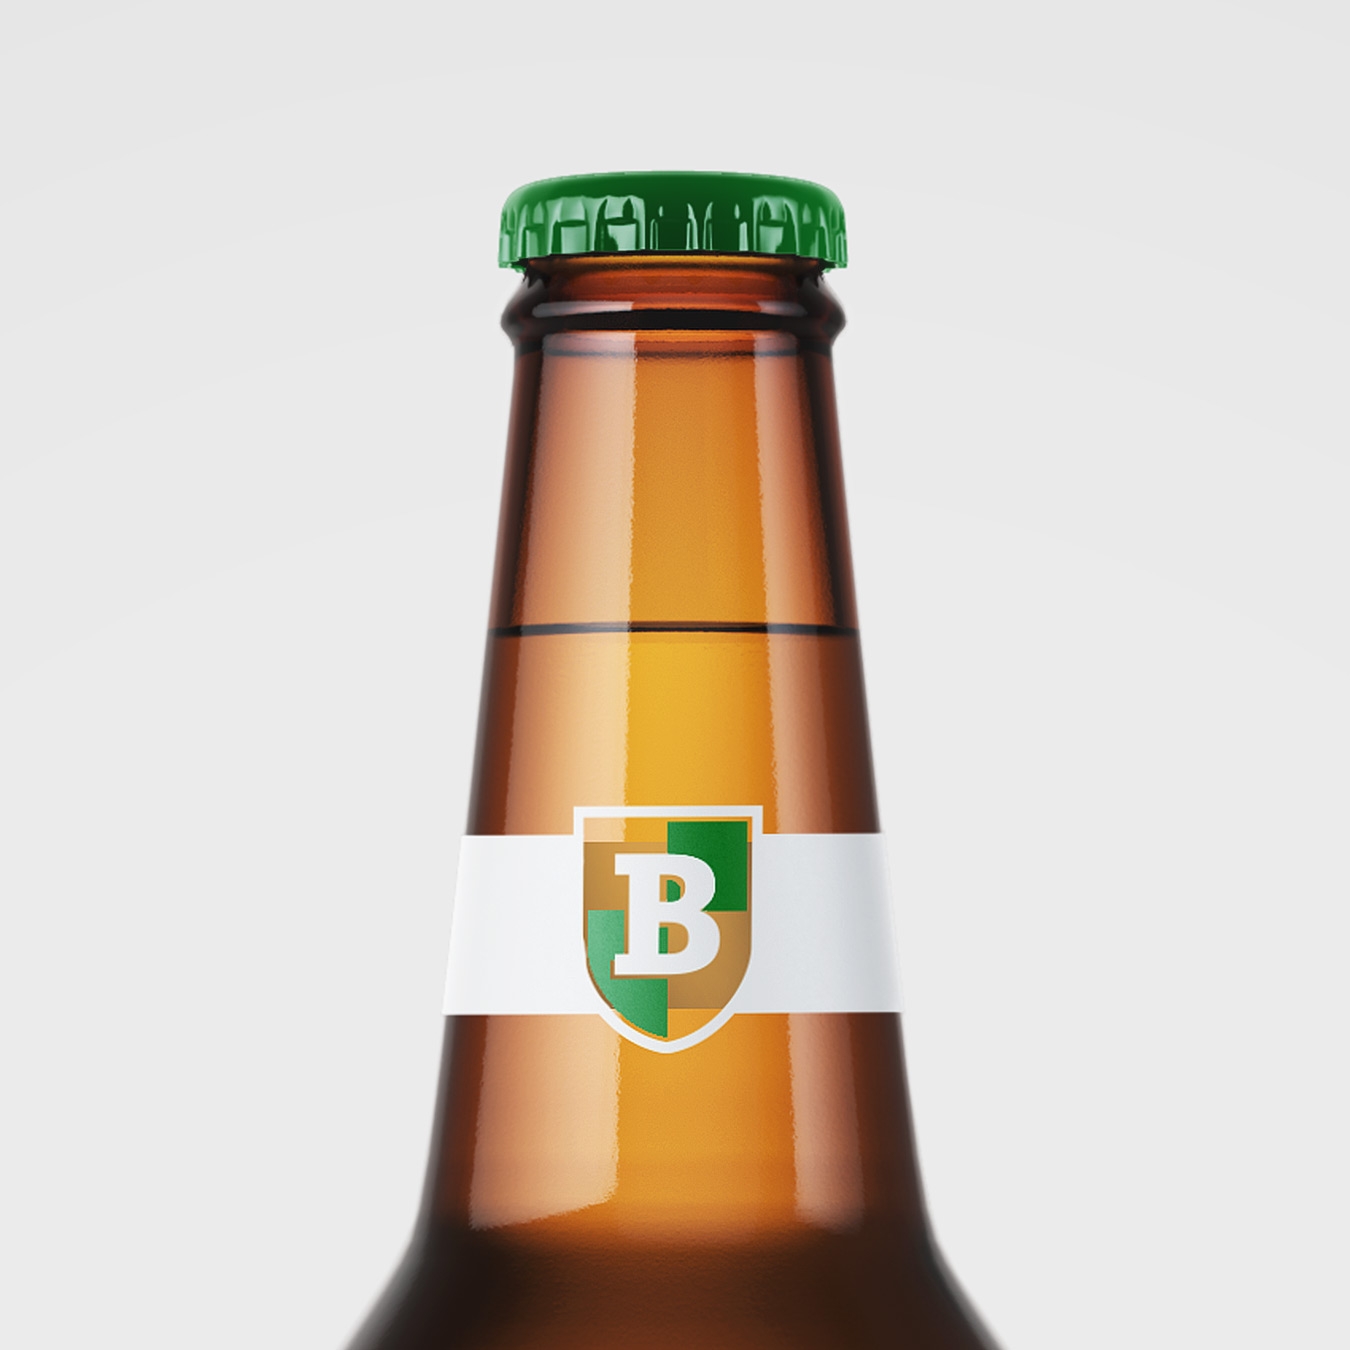 Bofferding beer bottle concept design closeup neck